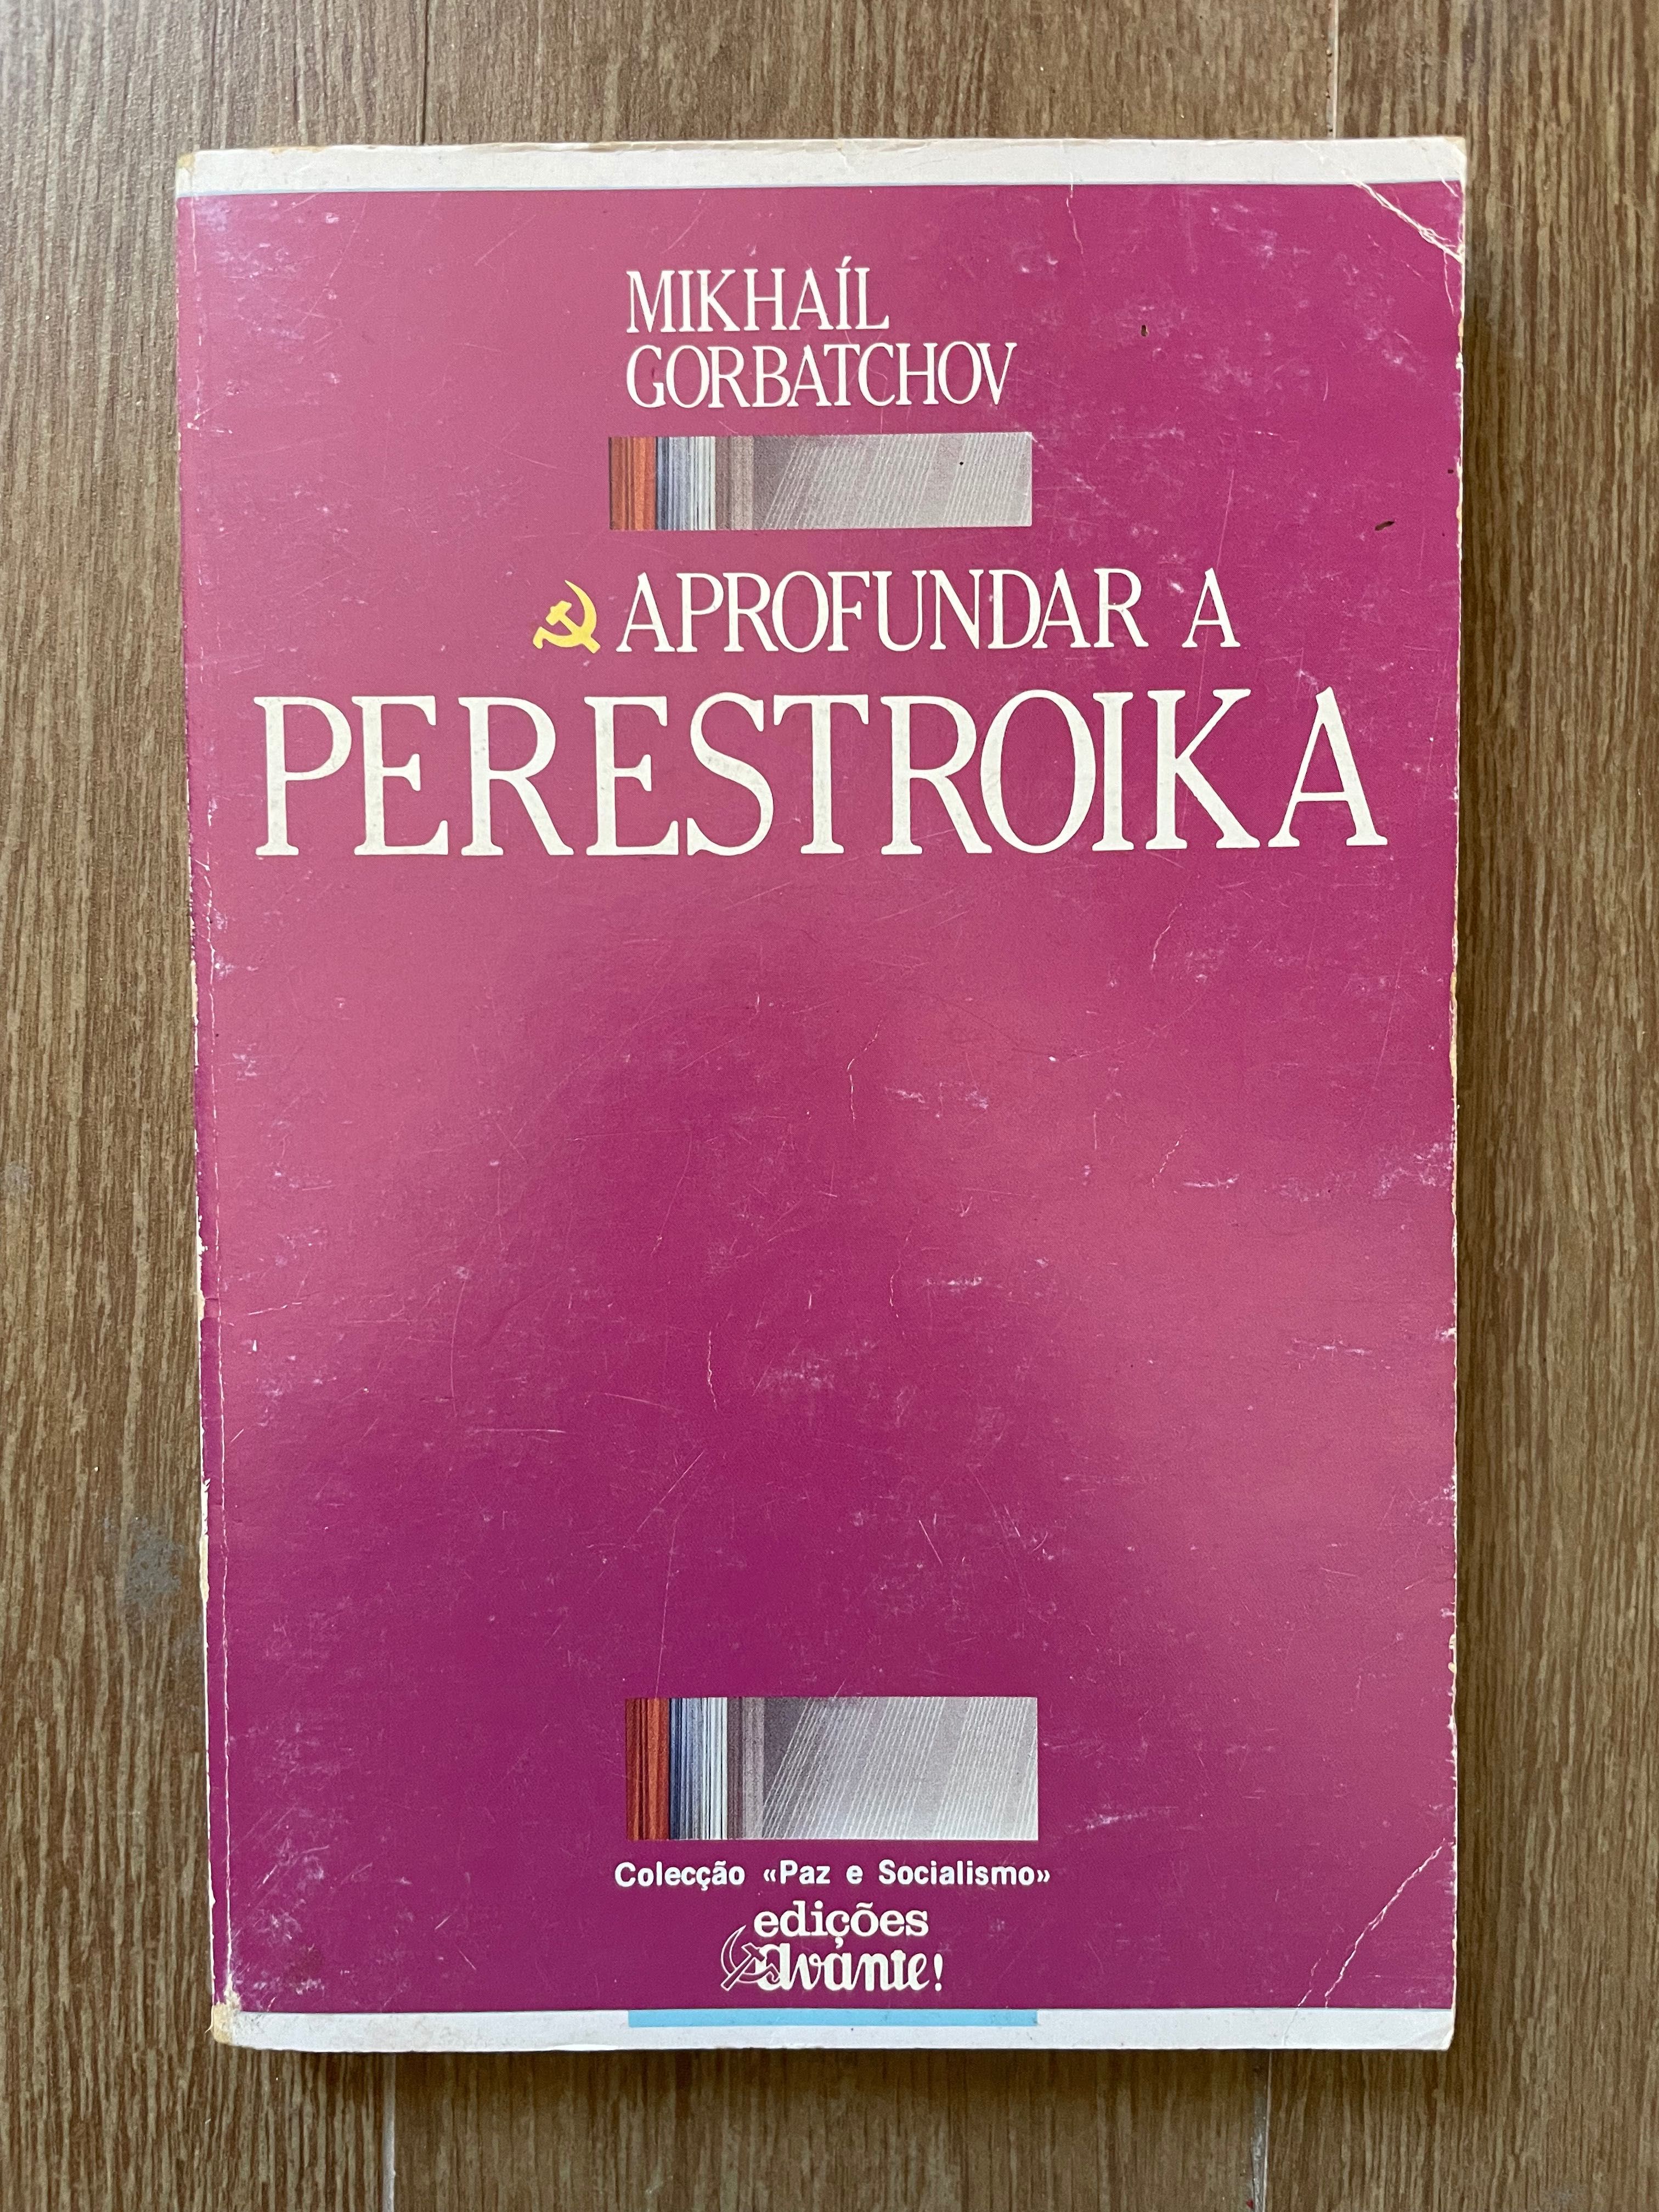 Aprofundar a Perestroika - Mikhail Gorbatchov (portes grátis)